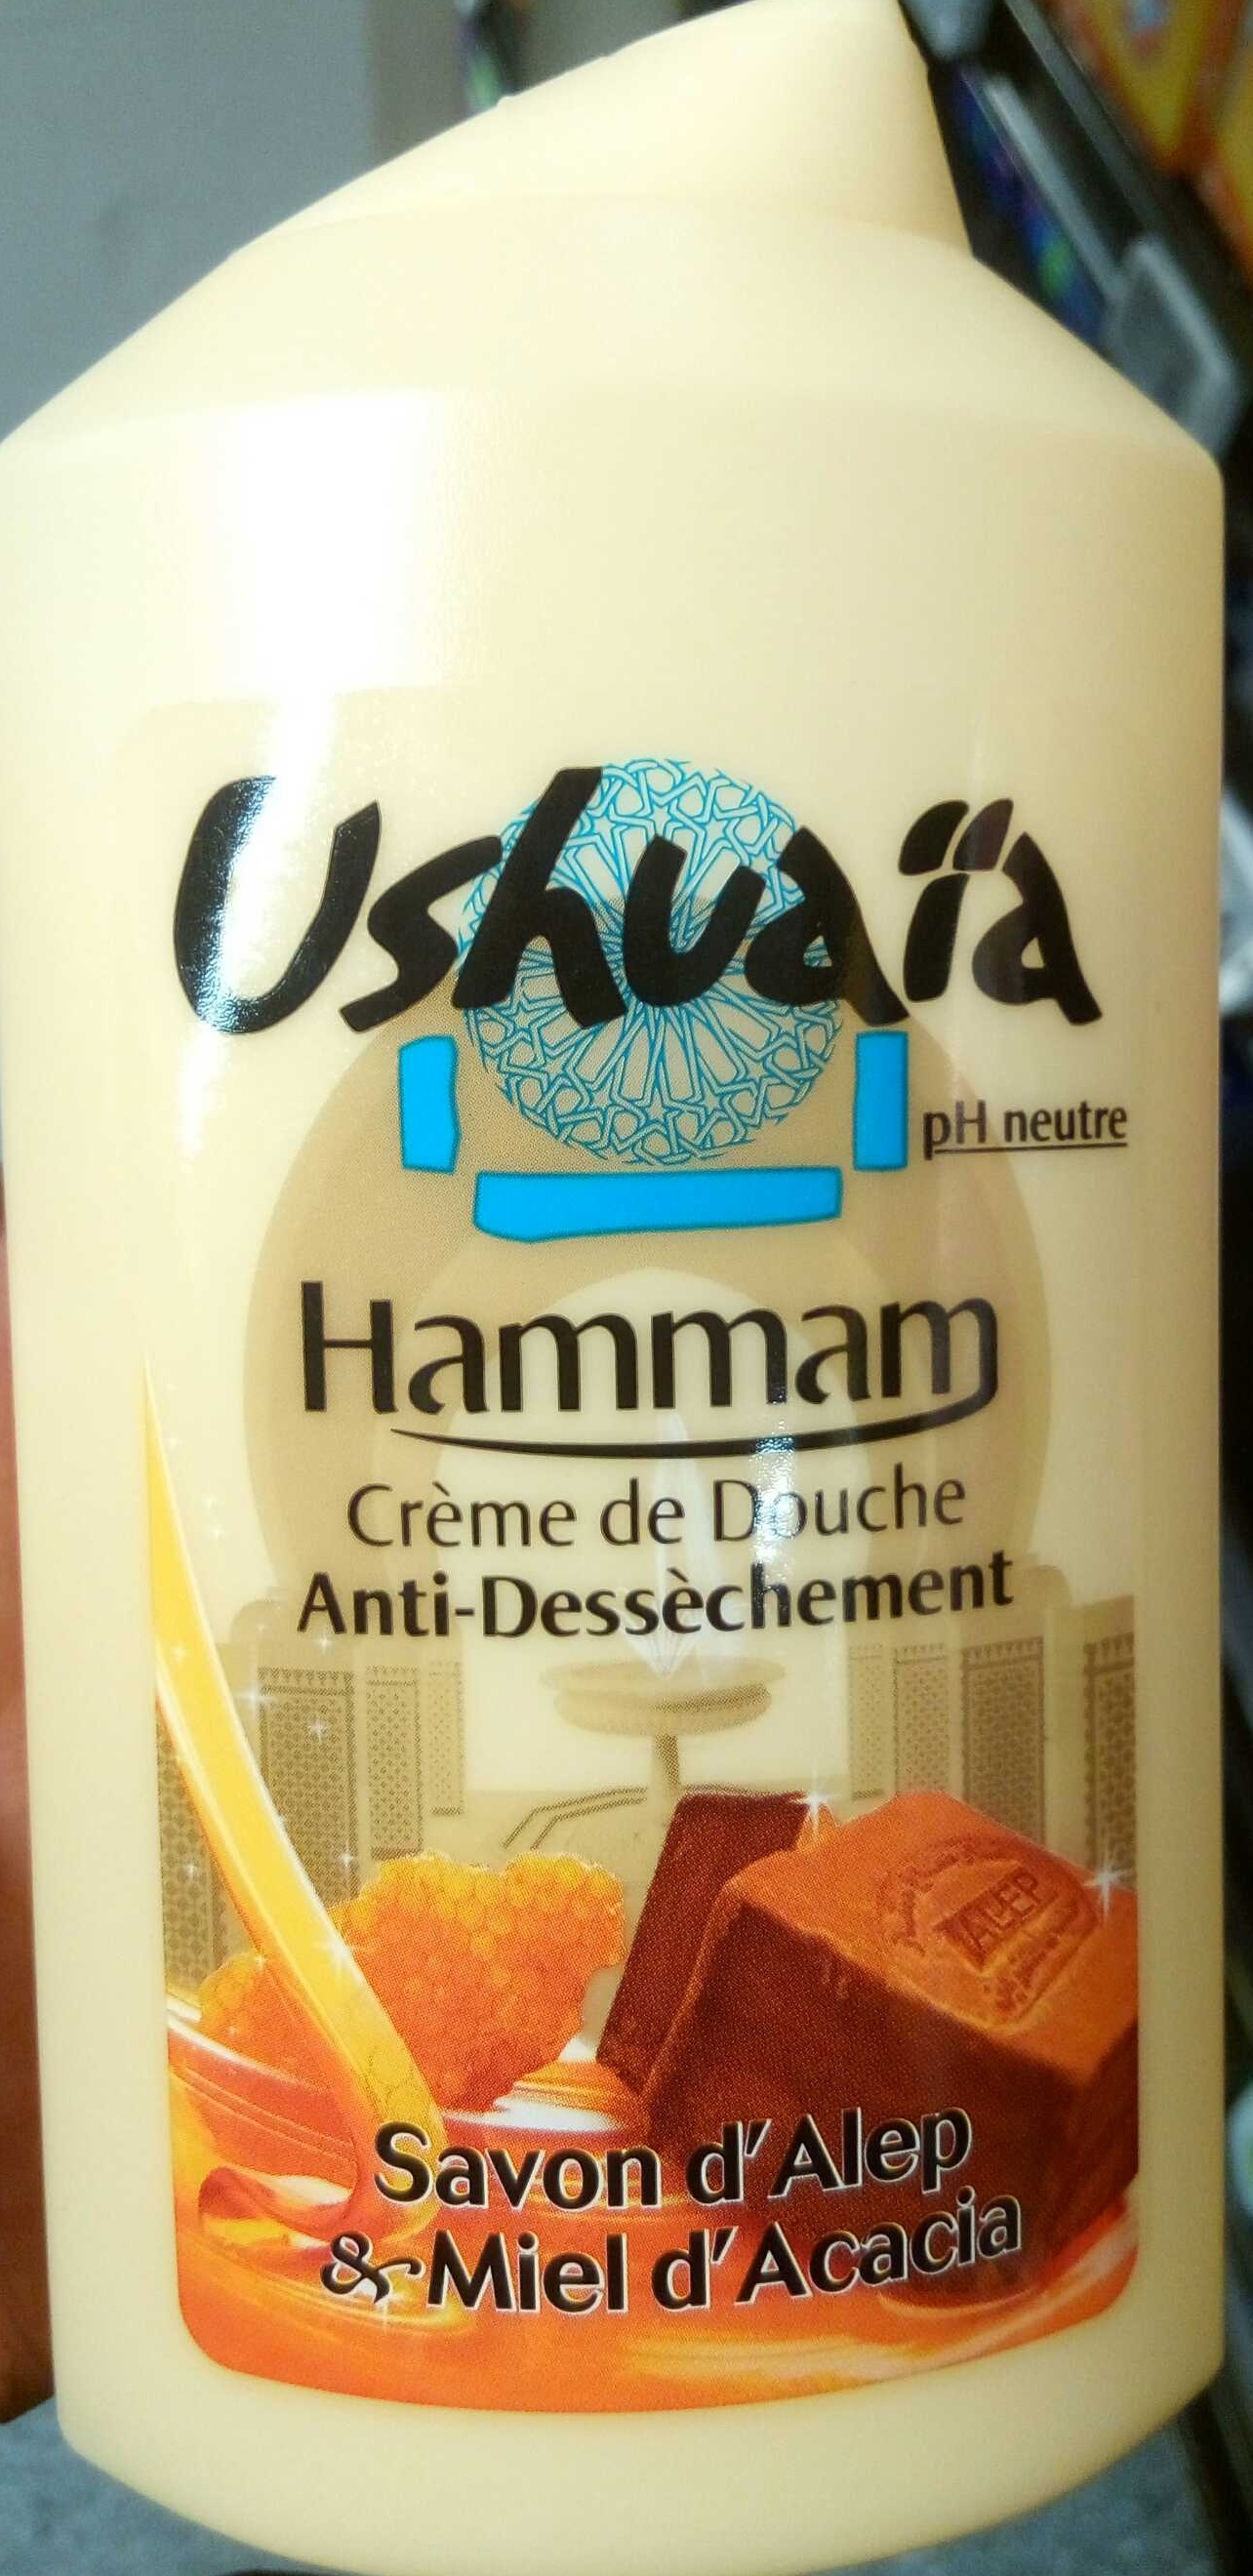 Crème de Douche anti-dessèchement Hammam Savon d'Alep & Miel d'Acacia - 製品 - fr